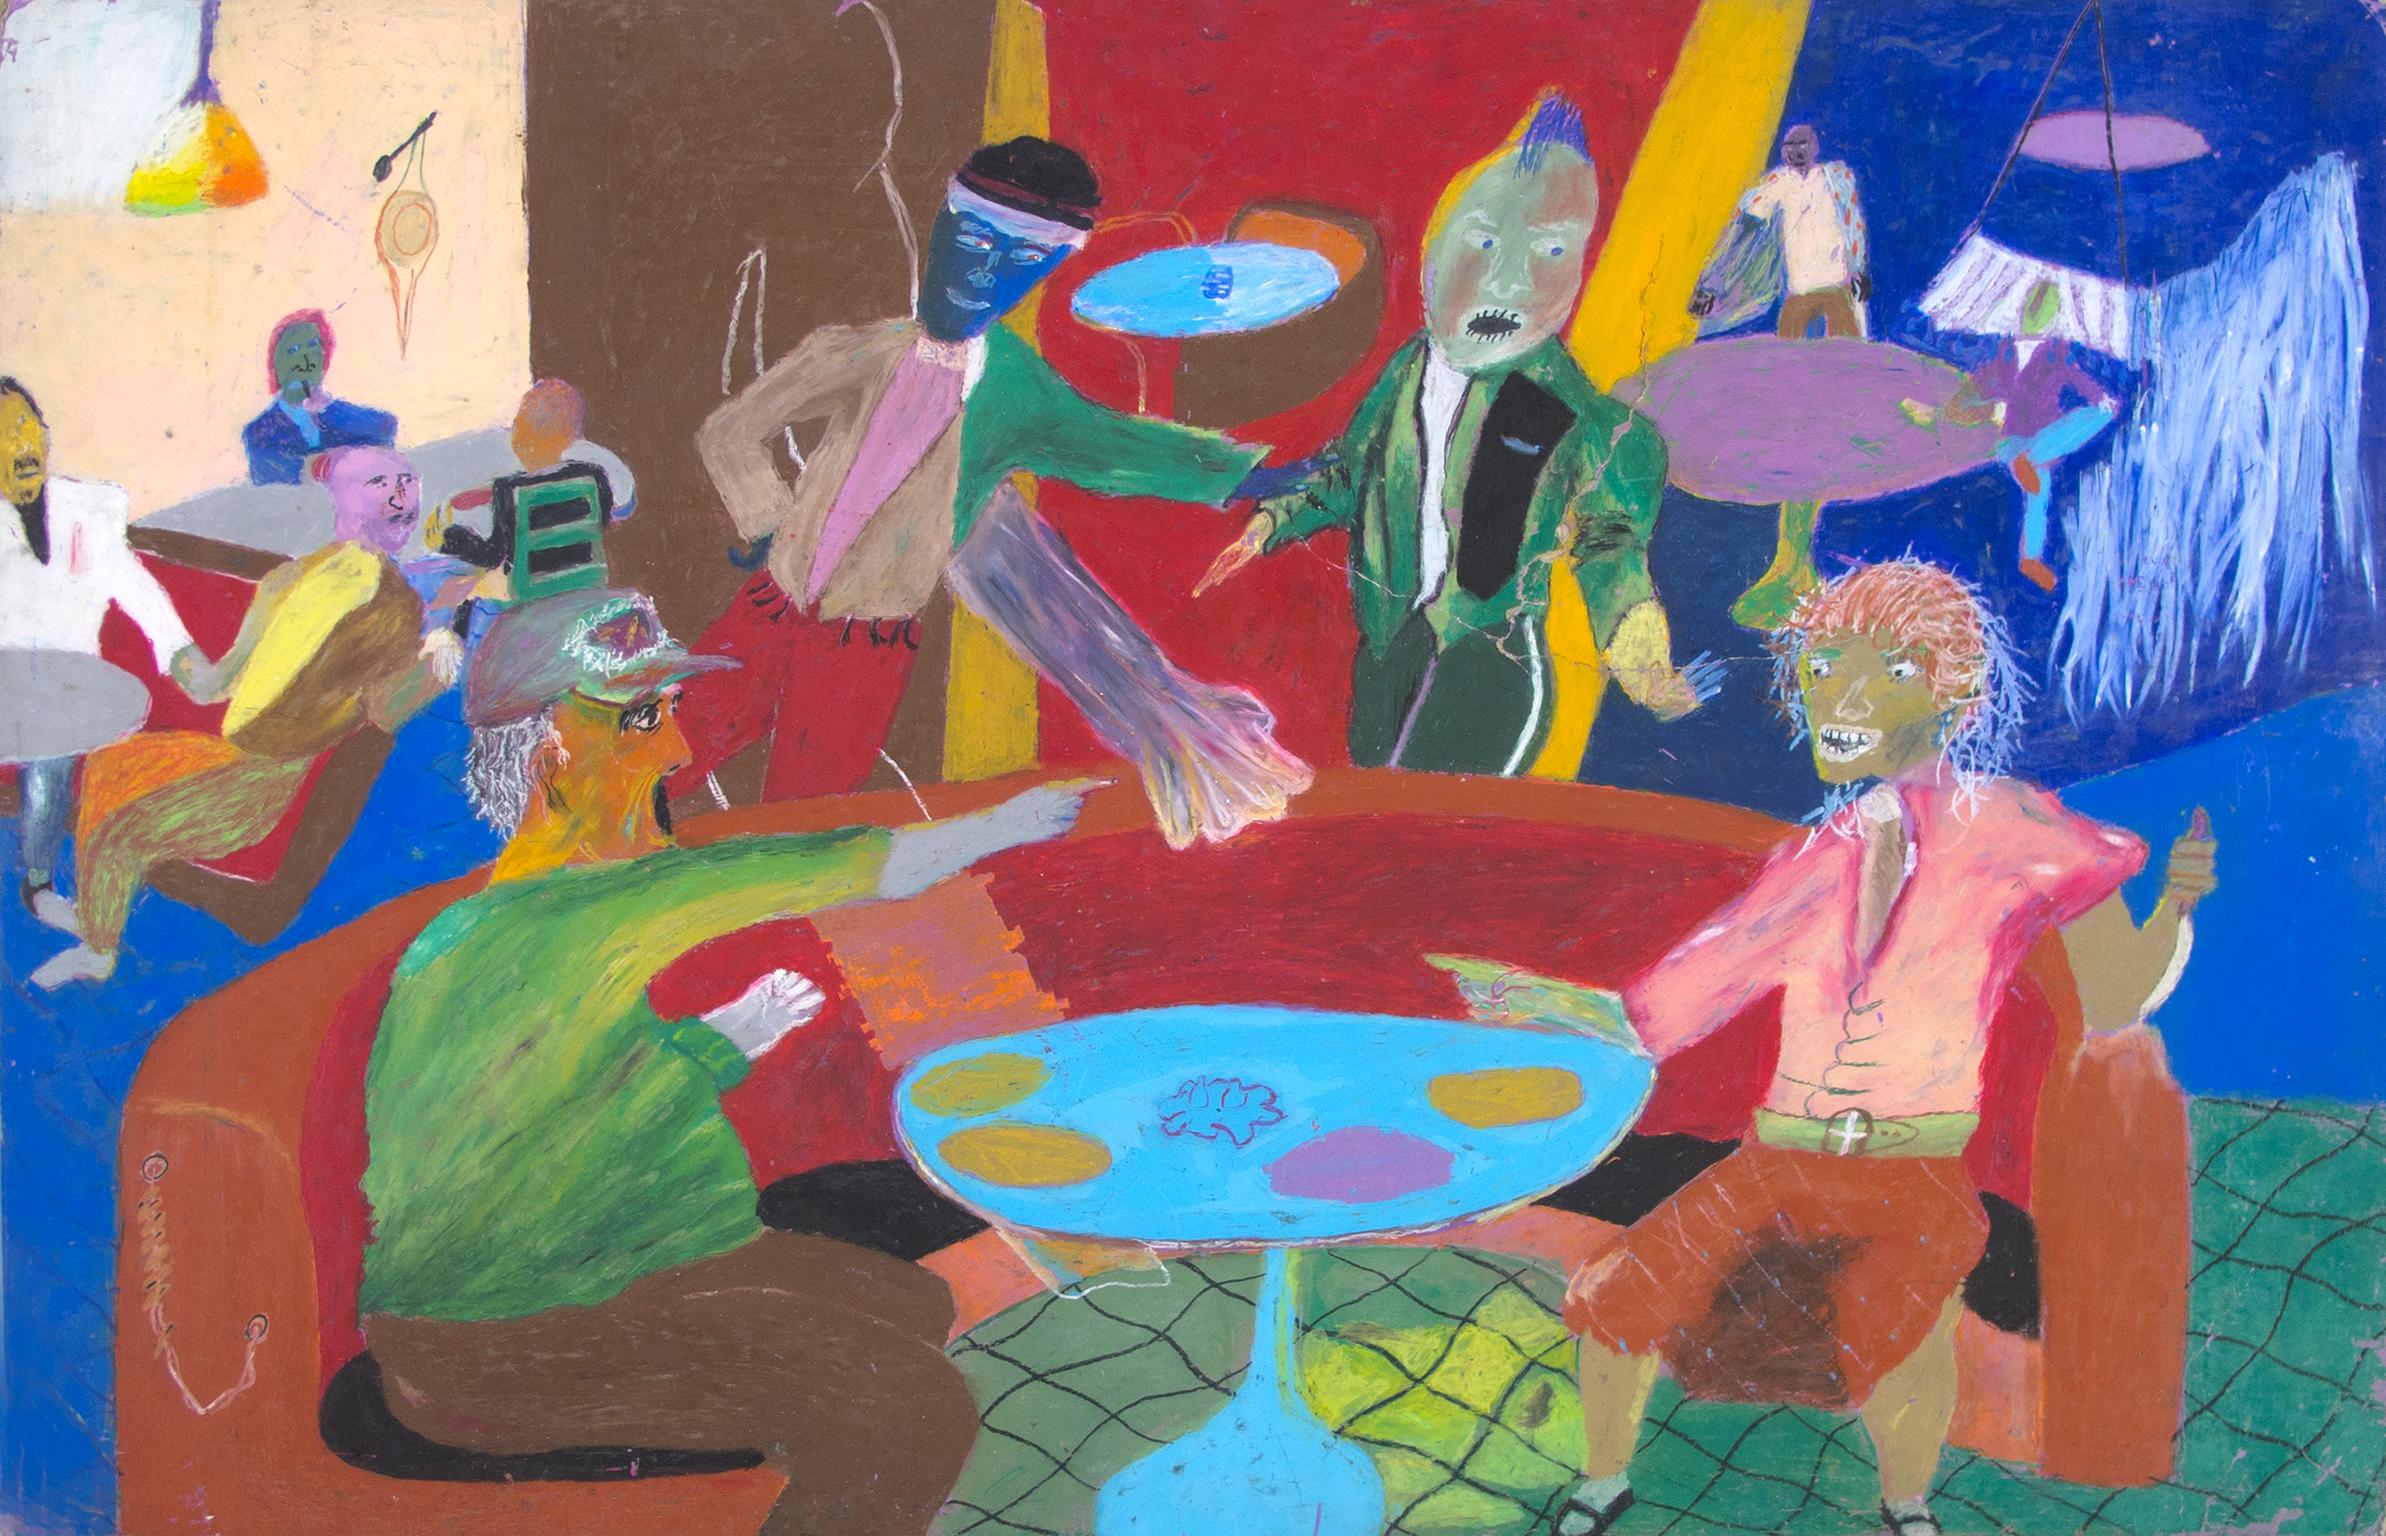 "Faraway From Familiar Sounds" est un dessin original au pastel gras sur carton ondulé réalisé par Reginald K. Gee. L'artiste a signé l'œuvre au dos. Il représente un certain nombre de figures abstraites assises dans un restaurant. 

Art de 28" x